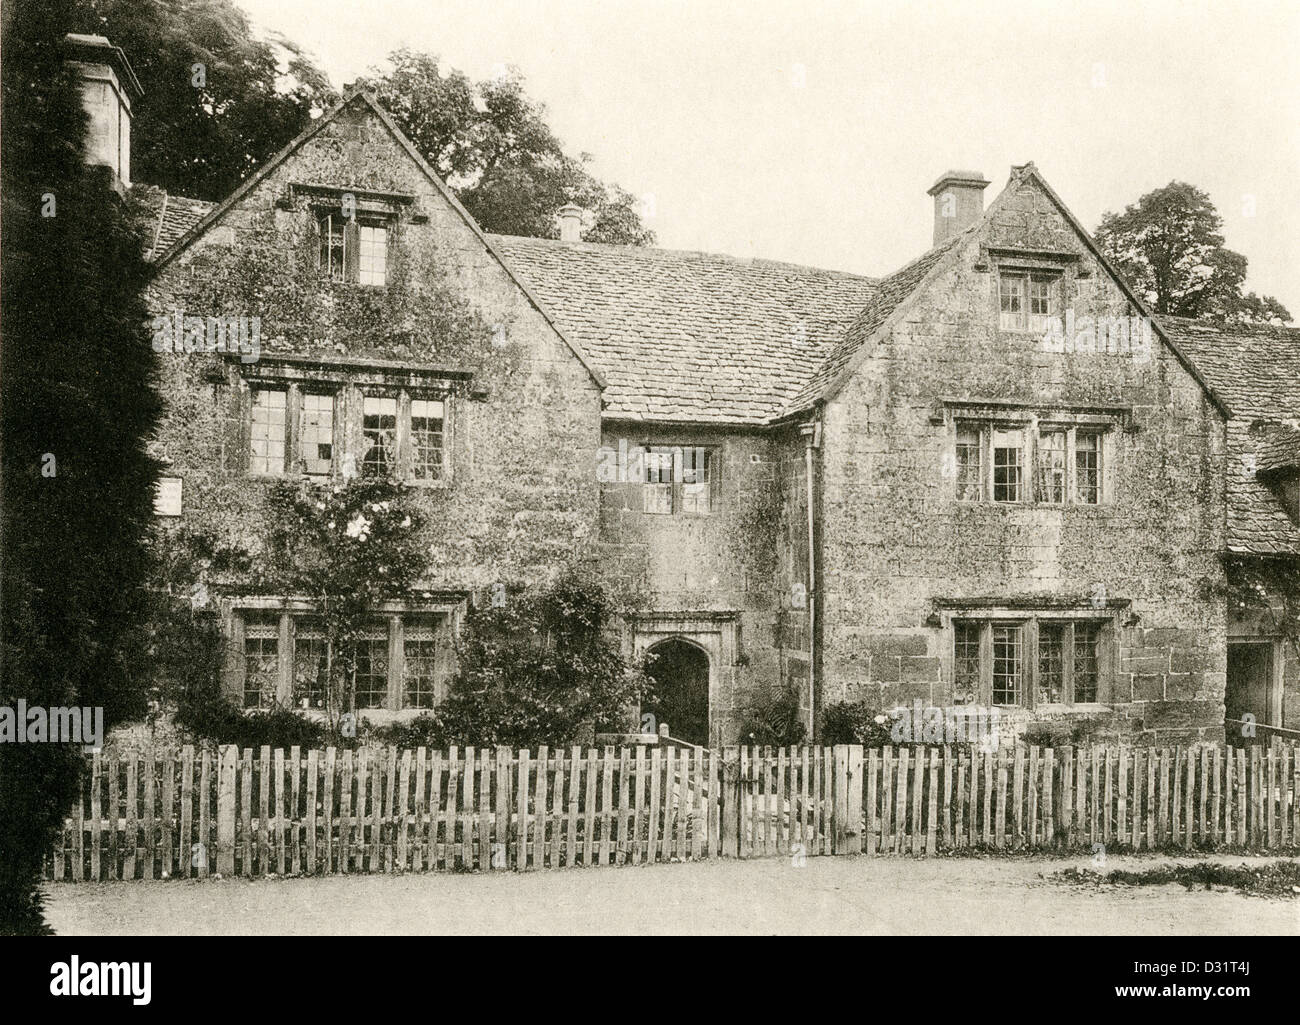 In 1905 veröffentlicht eine Leimdruck-Platte mit dem Titel "A Cottage at Stanway, Glos.", mit einer hohen Auflösung aus einem Buch gescannt. Stockfoto